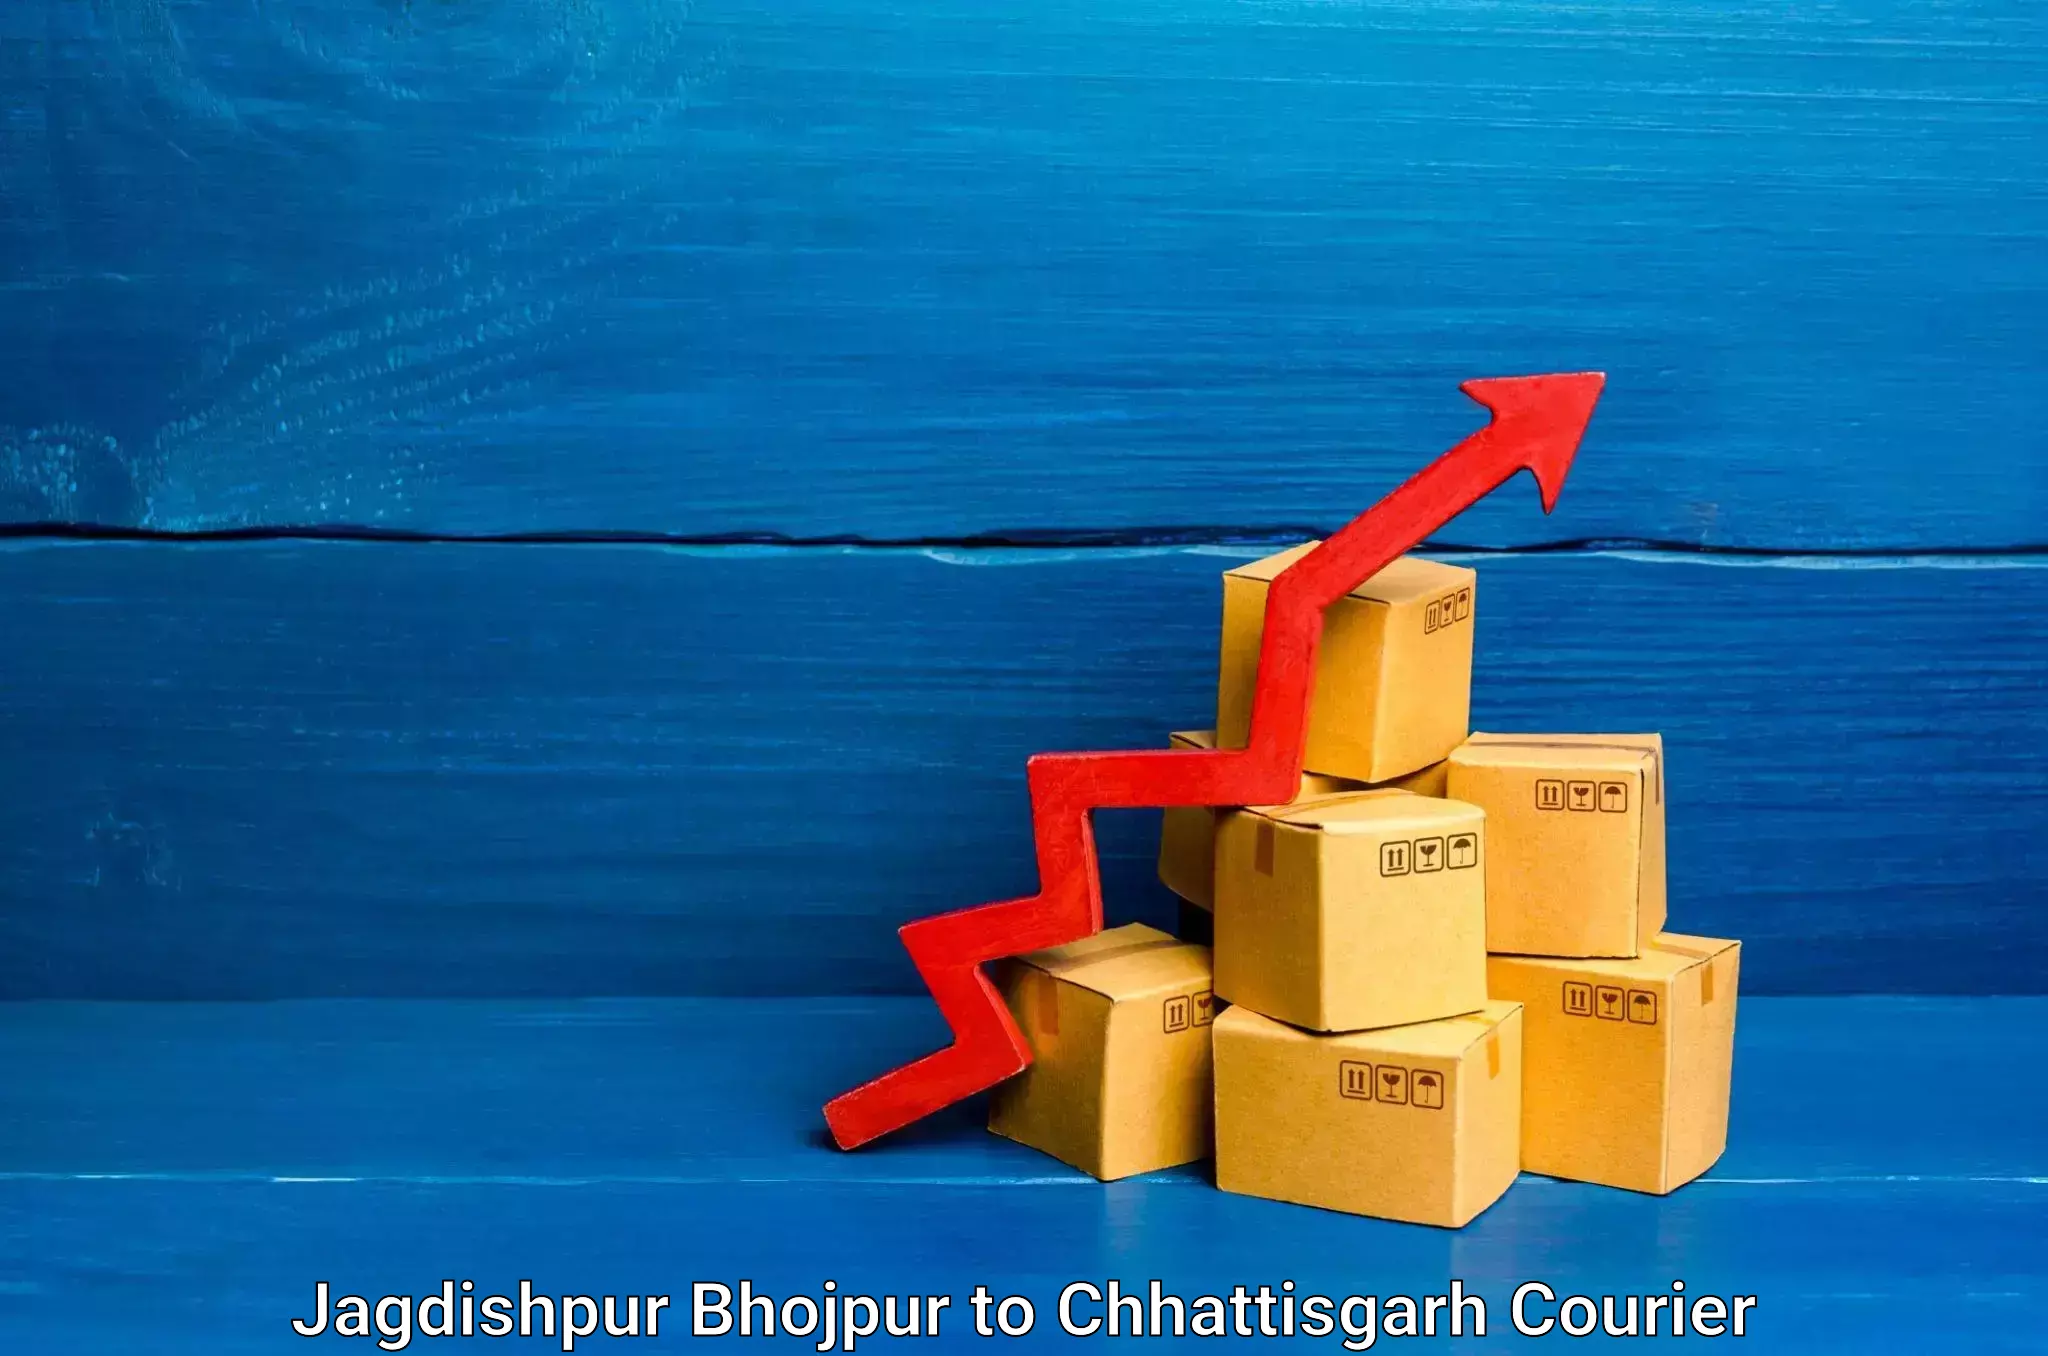 Furniture moving services Jagdishpur Bhojpur to Raigarh Chhattisgarh